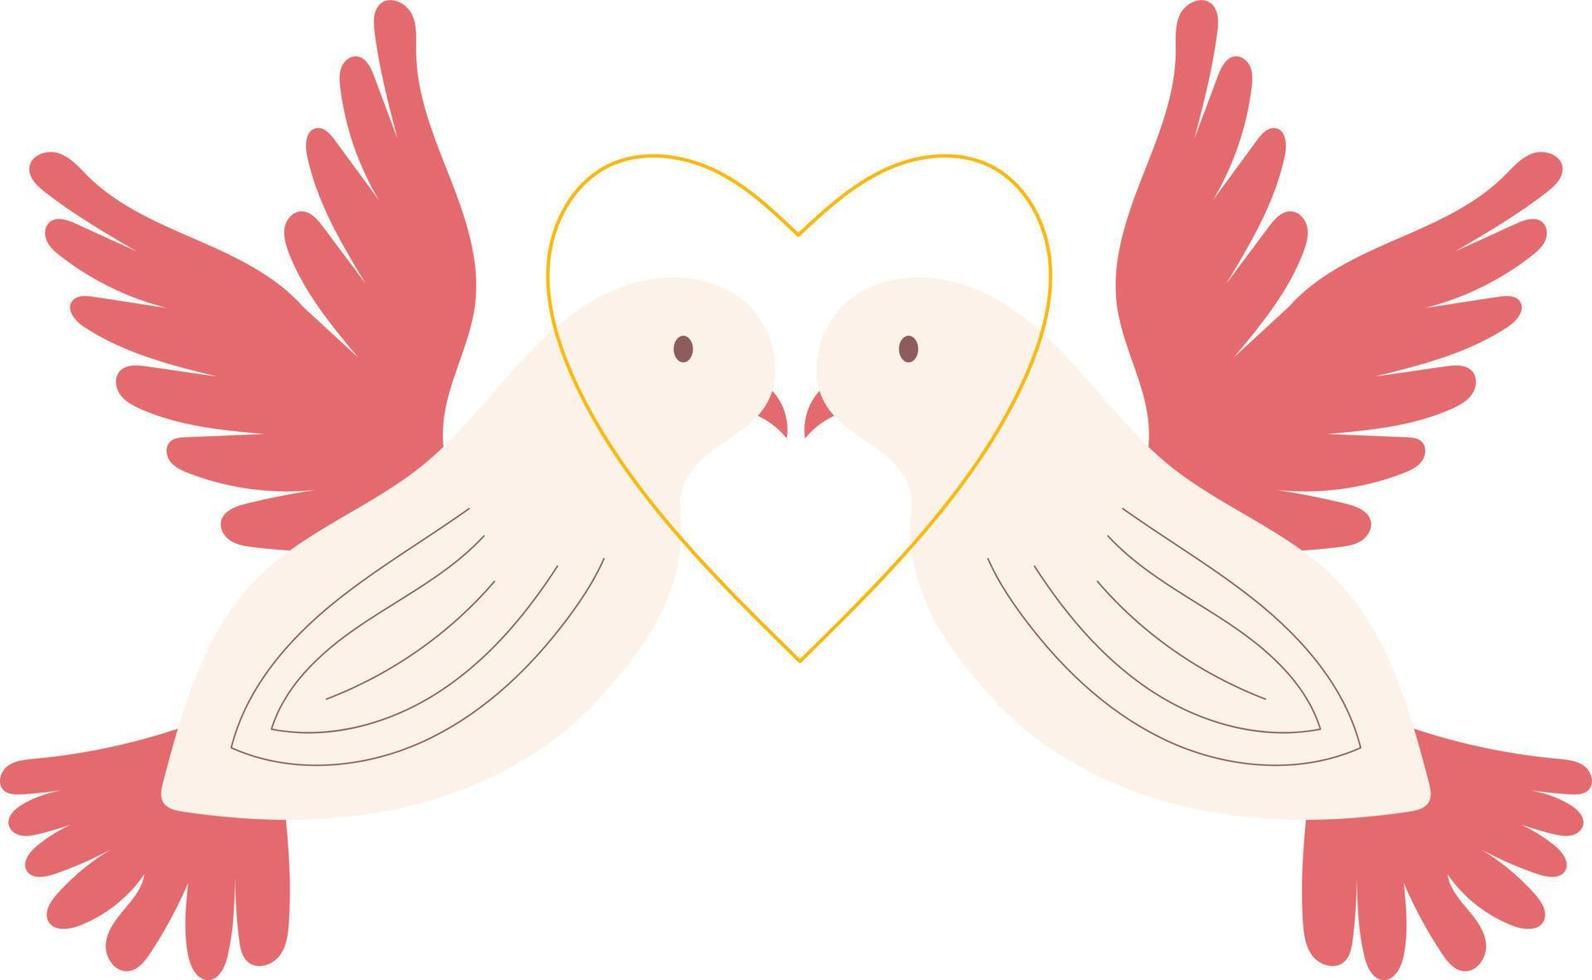 Wedding doves illustration vector